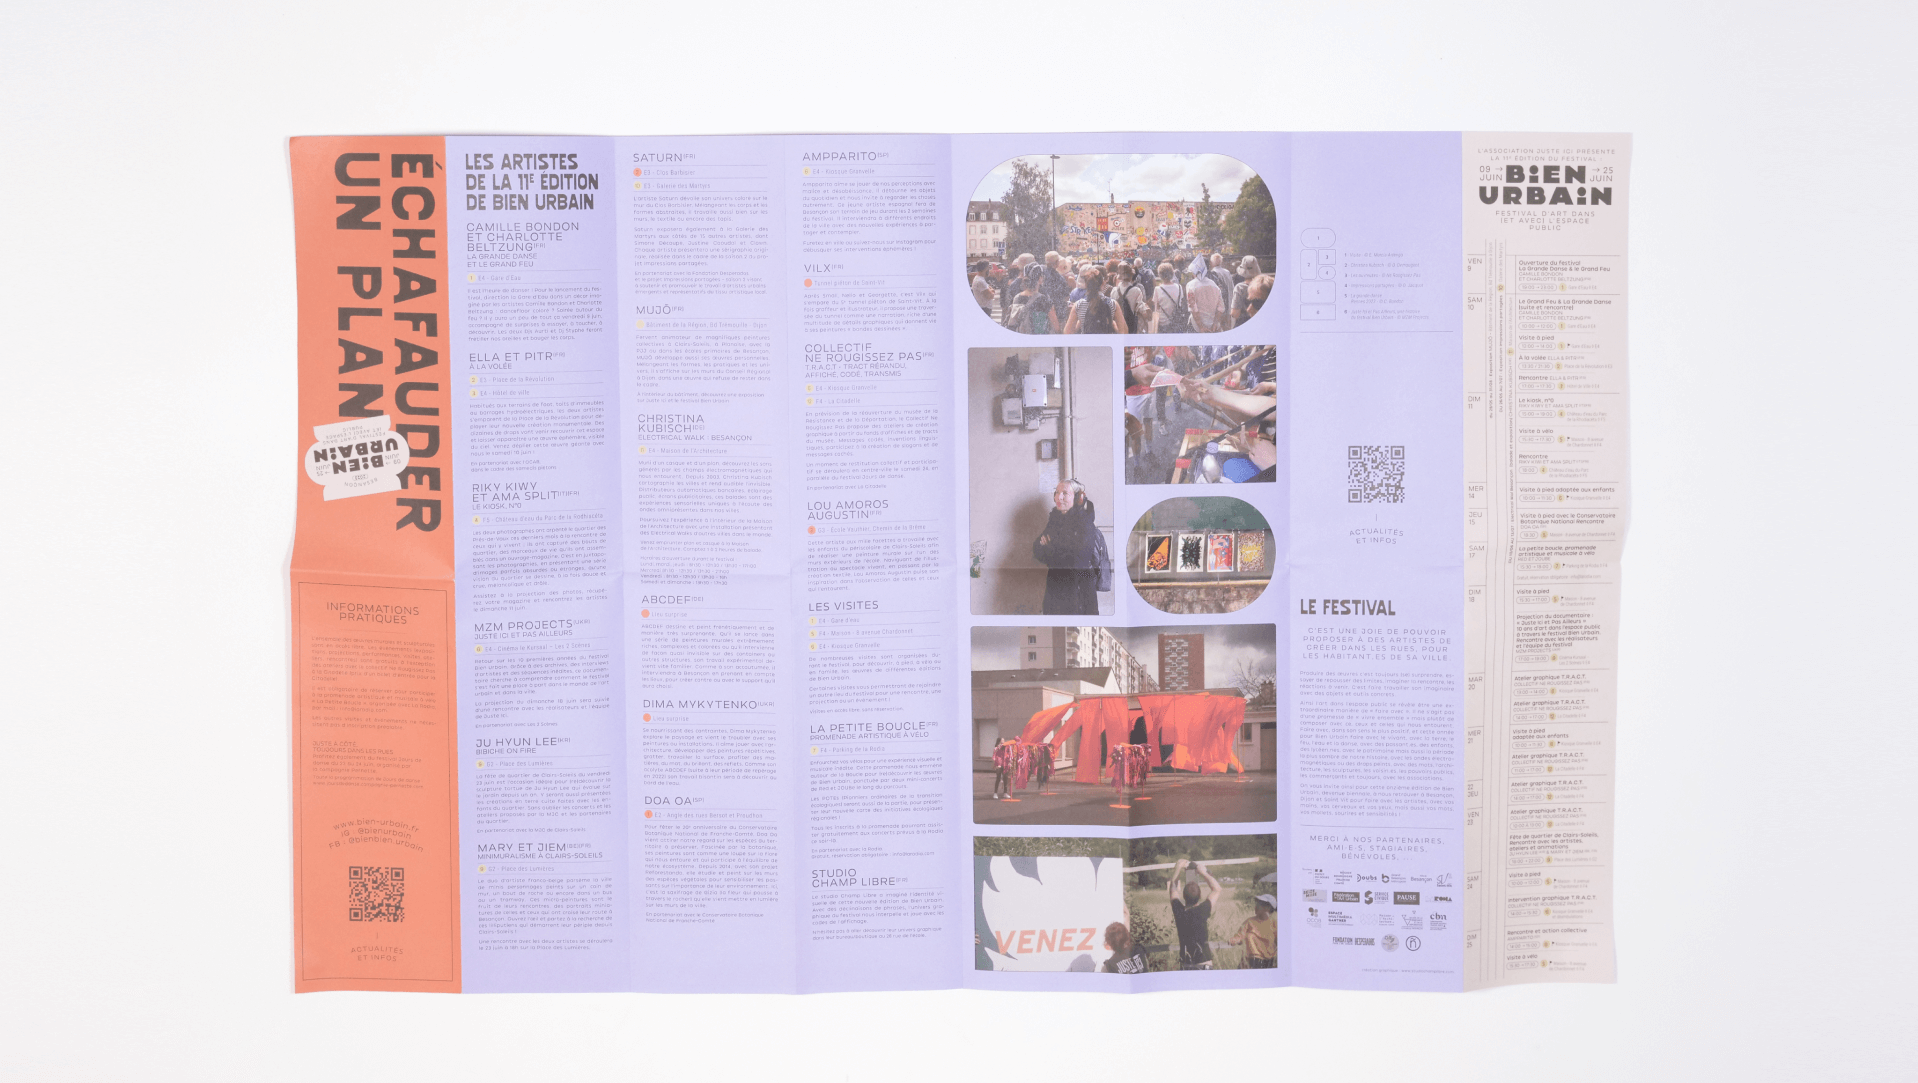 Programme du festival mis en page par le studio champ libre pour le festival bien urbain